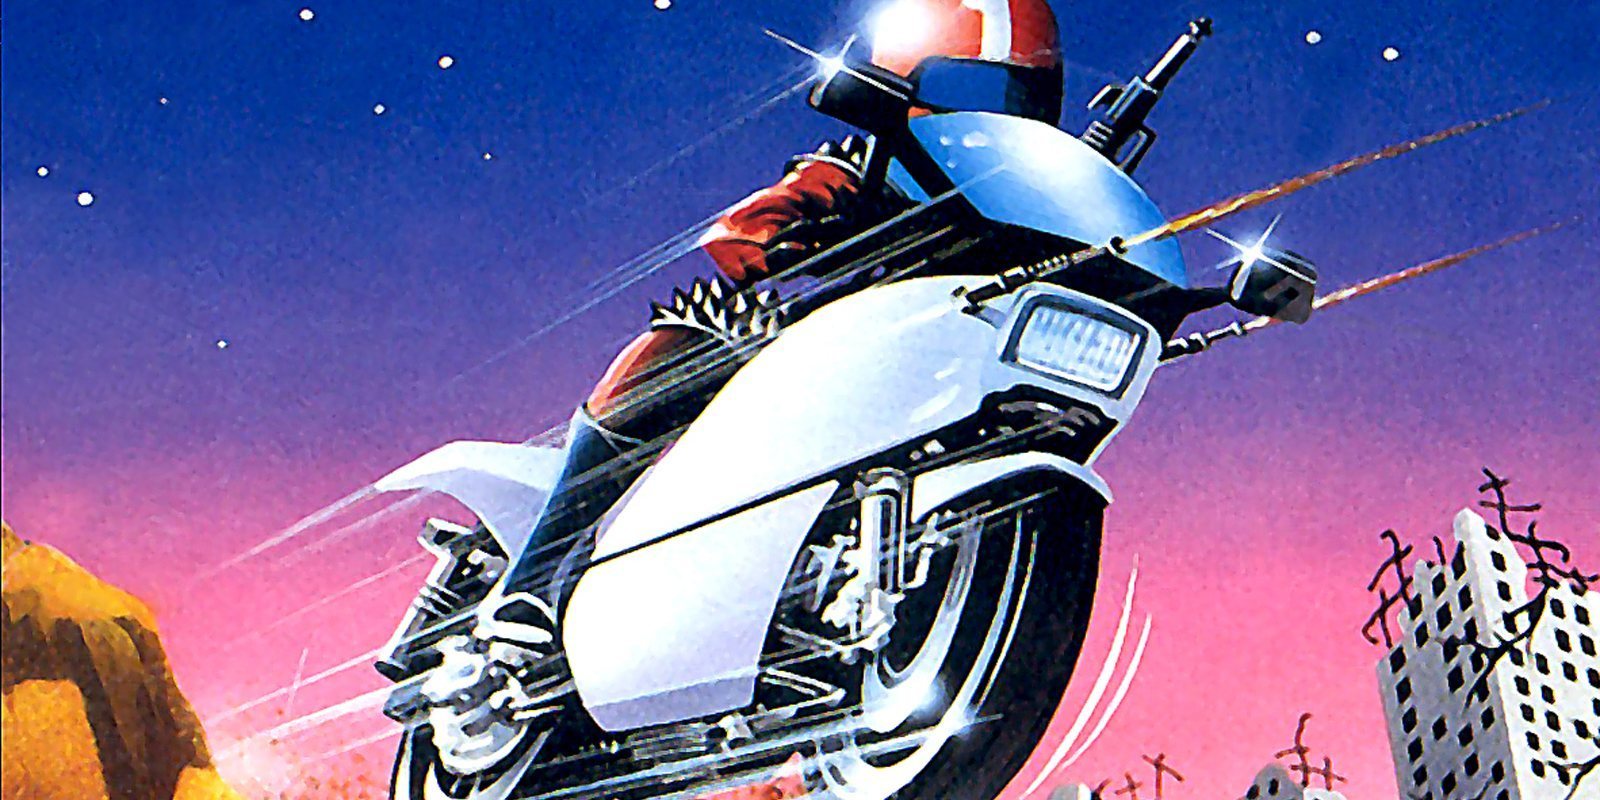 RETRO 'Mach Rider', analizamos este clásico de la velocidad de Nintendo